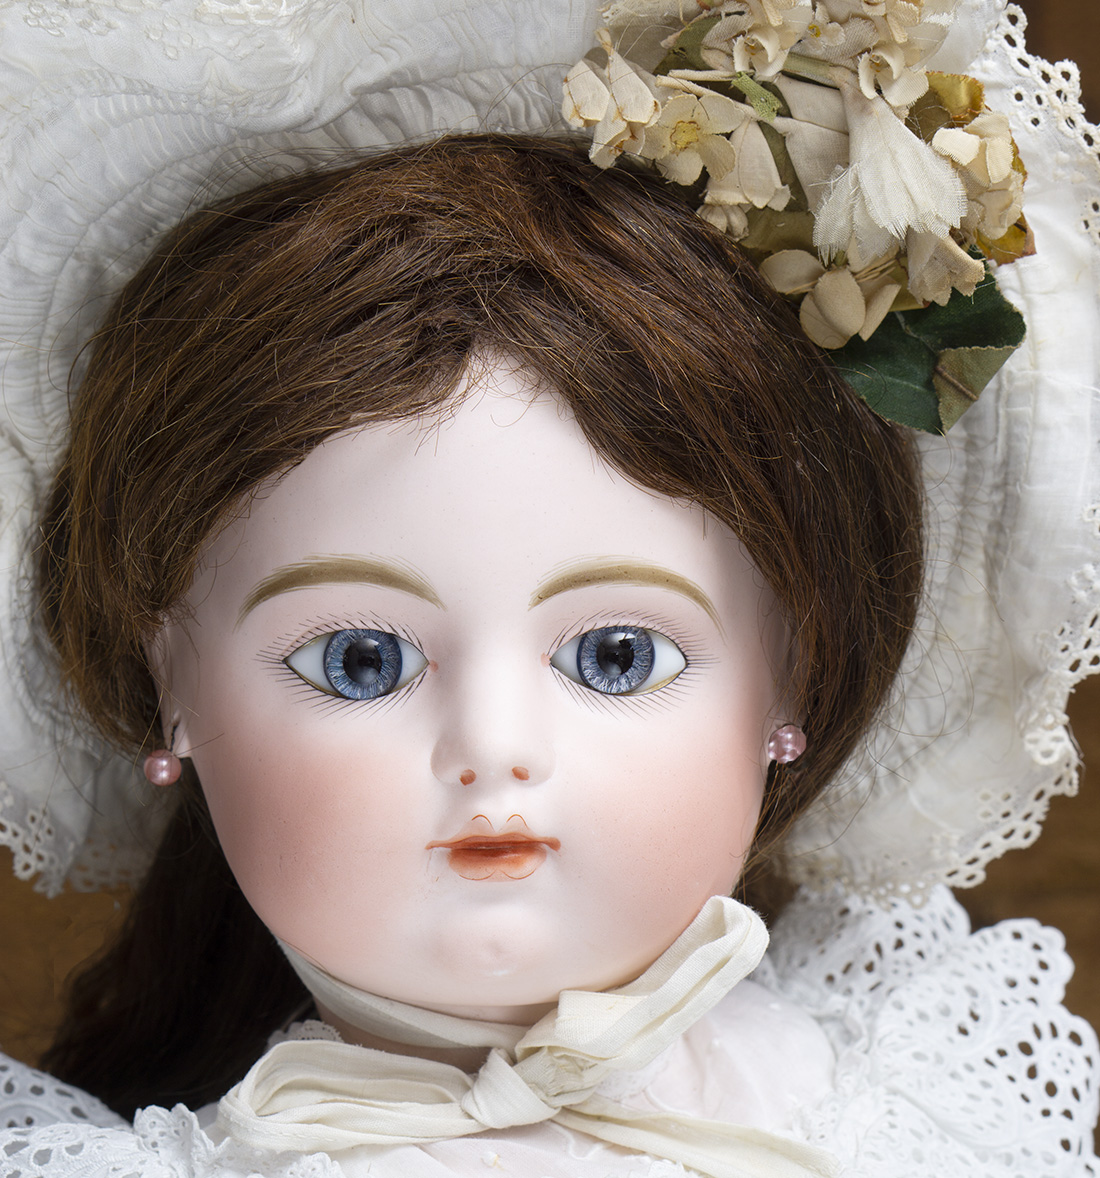 74cm FG Bebe doll with Gesland body